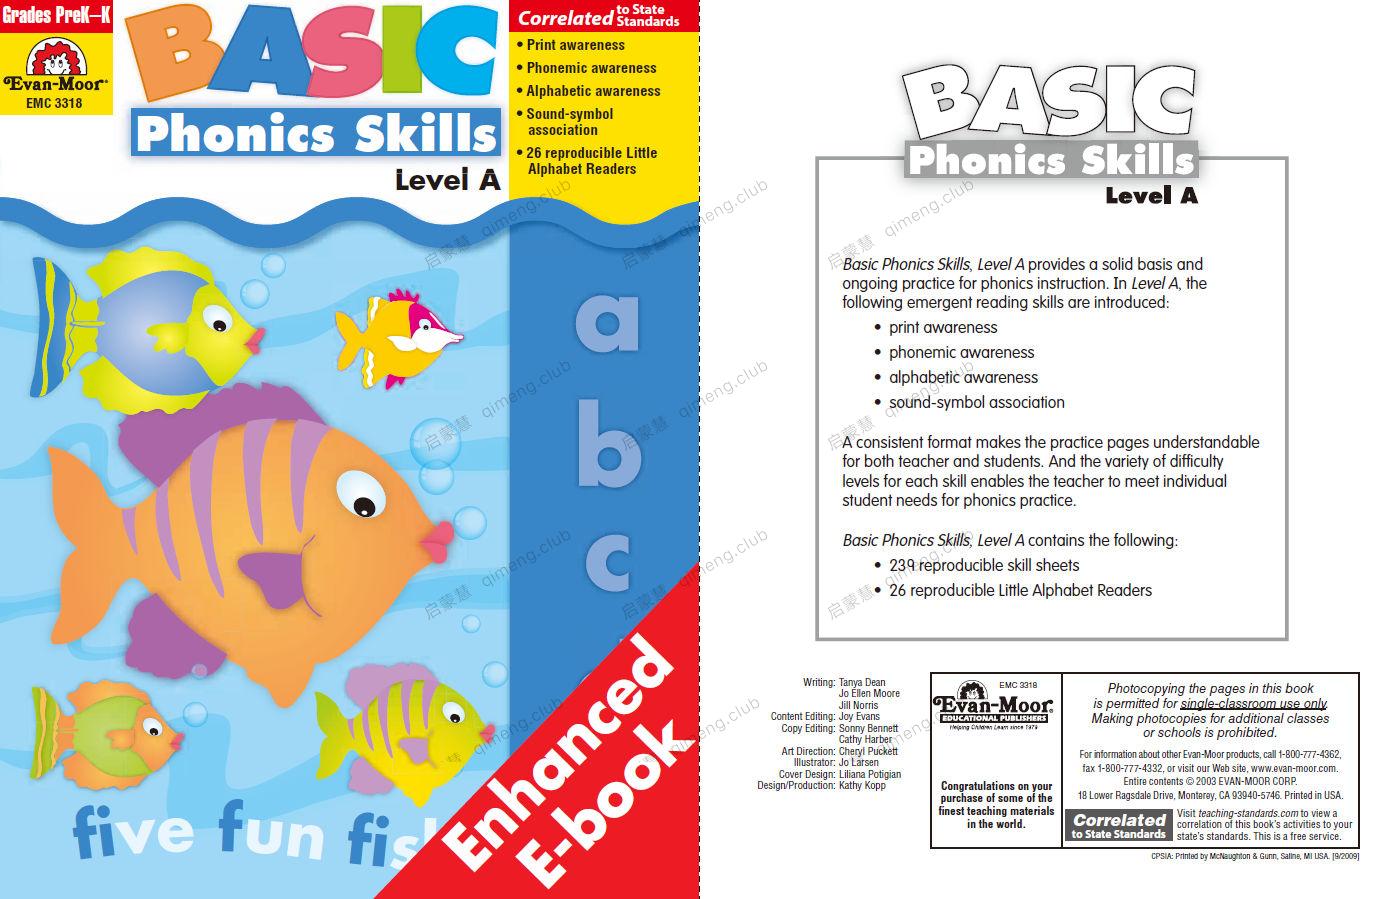 零基础学习必备Evan Moor 自然拼读练习册《Basic Phonics Skills》 Level ABC  3册 学龄前幼儿园小学1-2年级